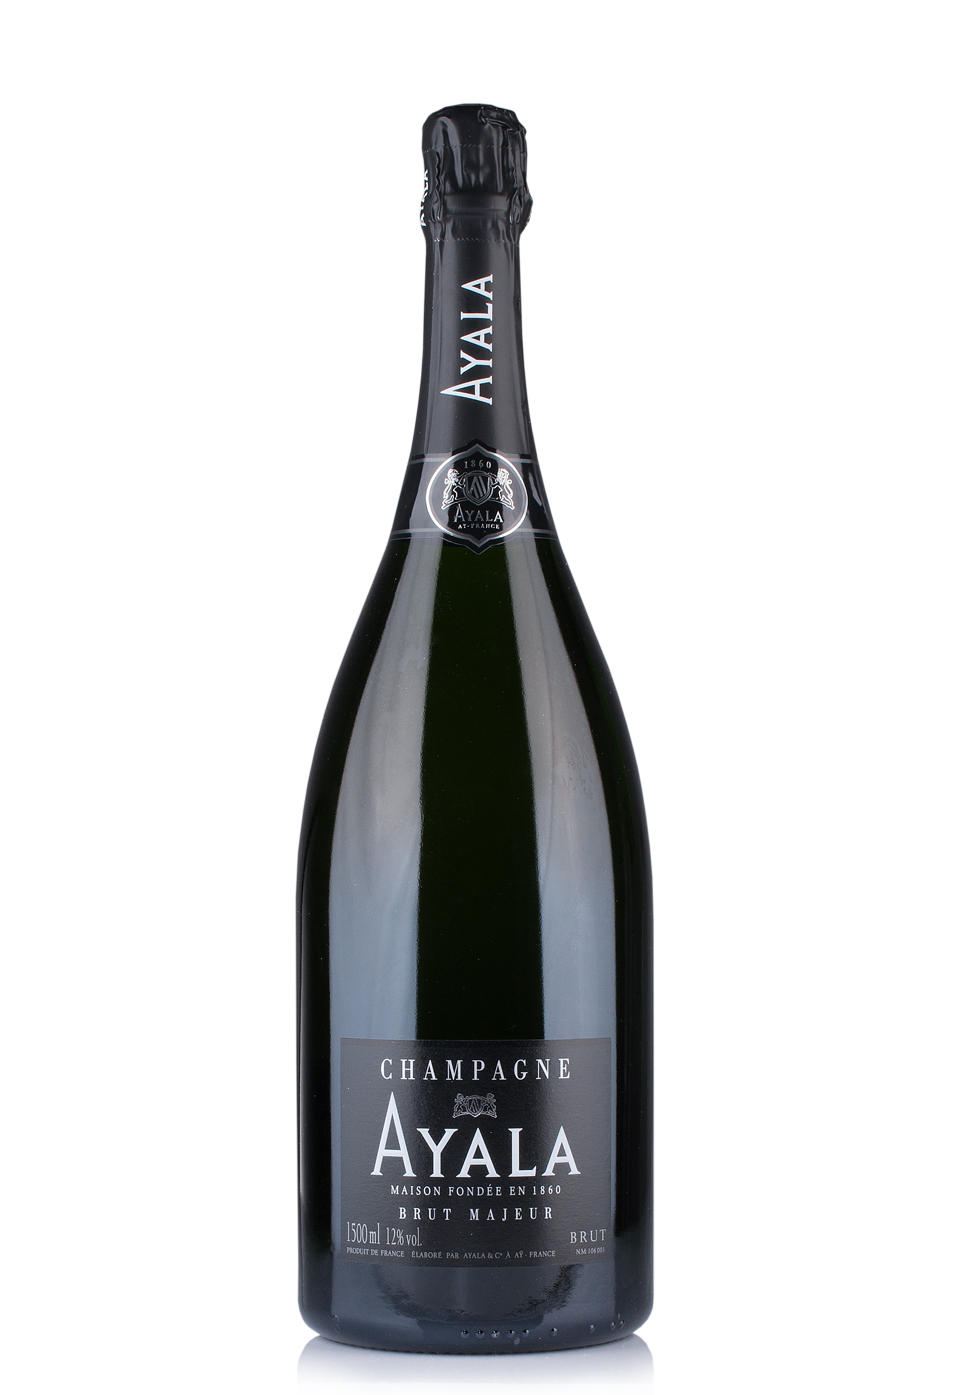 Champagne Ayala Brut Majeur Mathusalem (6L)